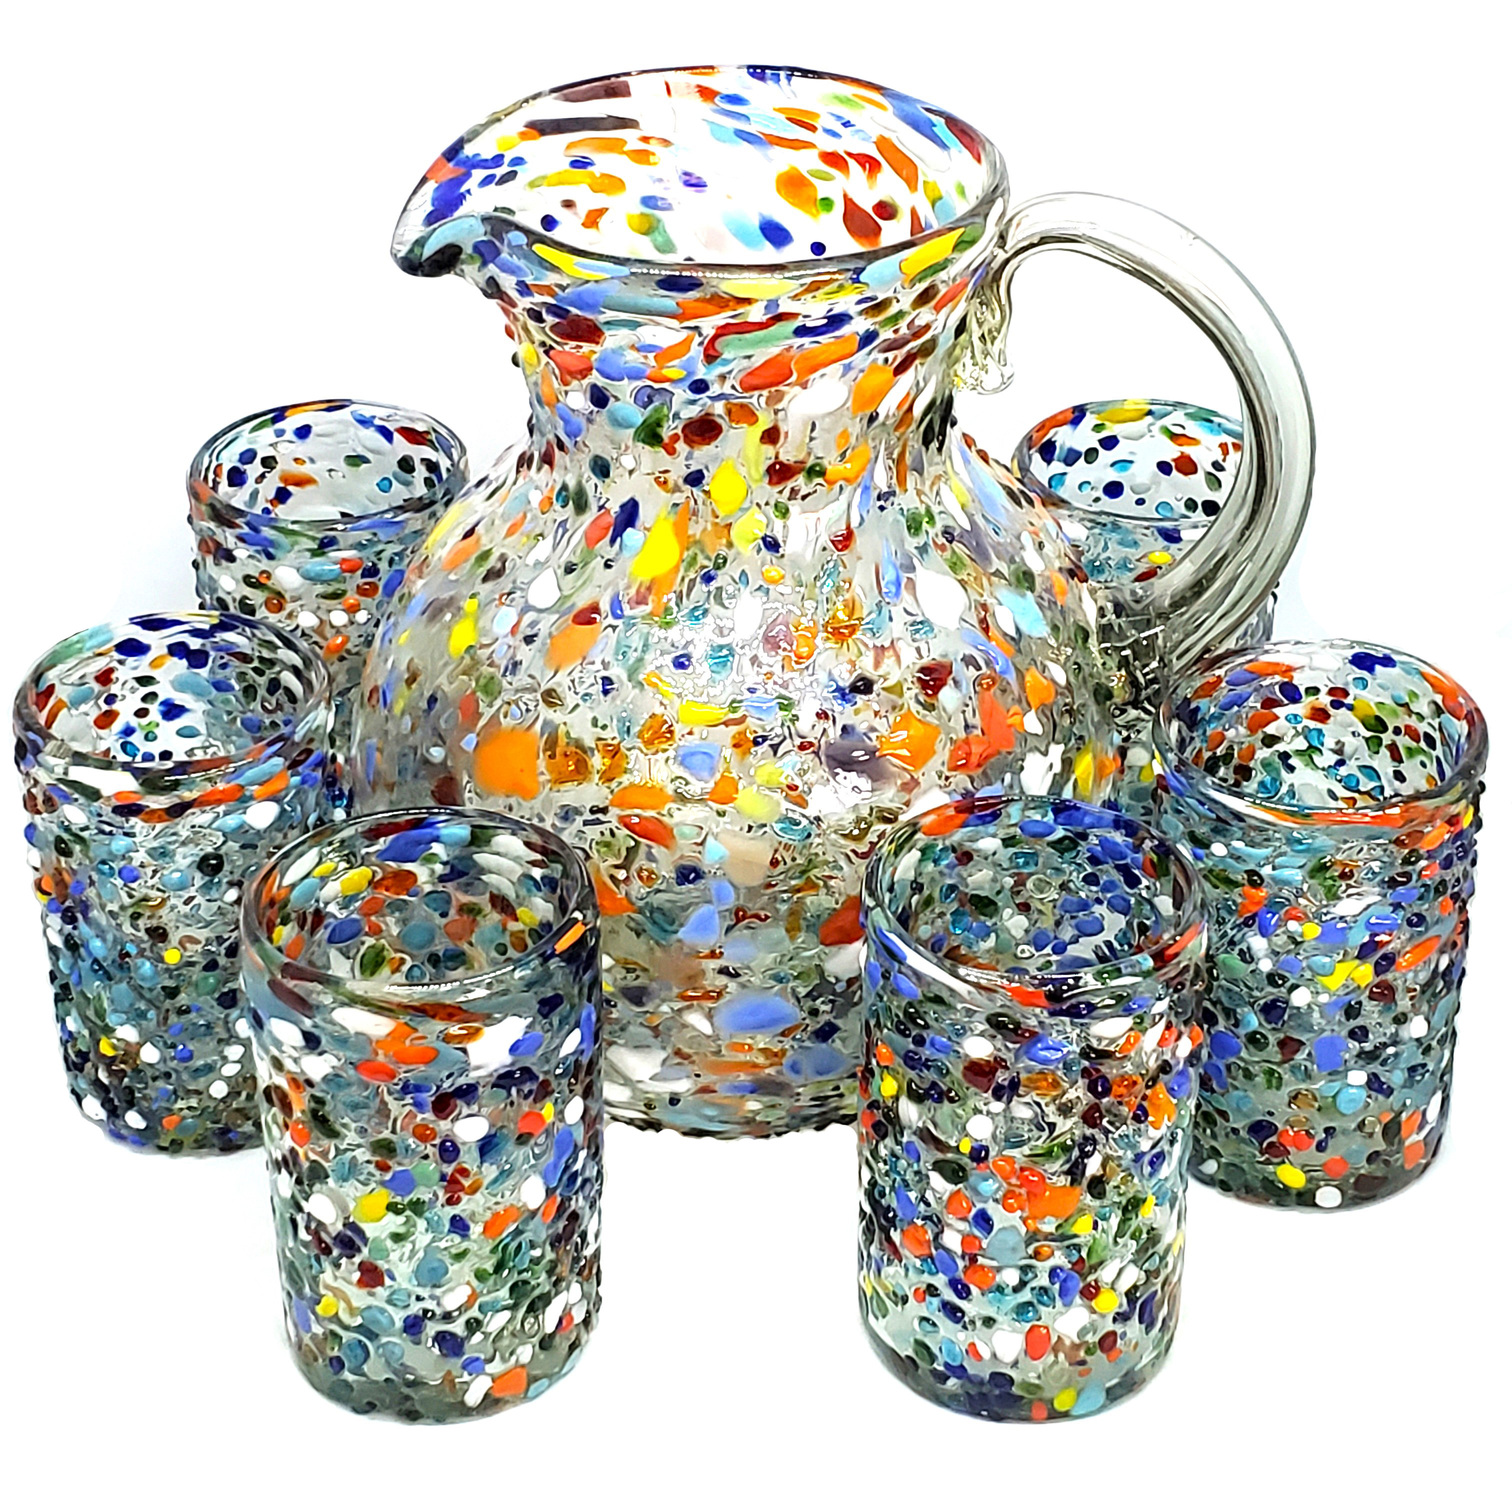 Juego de jarra y 6 vasos grandes 'Confeti granizado', 120 oz, Vidrio Reciclado, Libre de Plomo y Toxinas